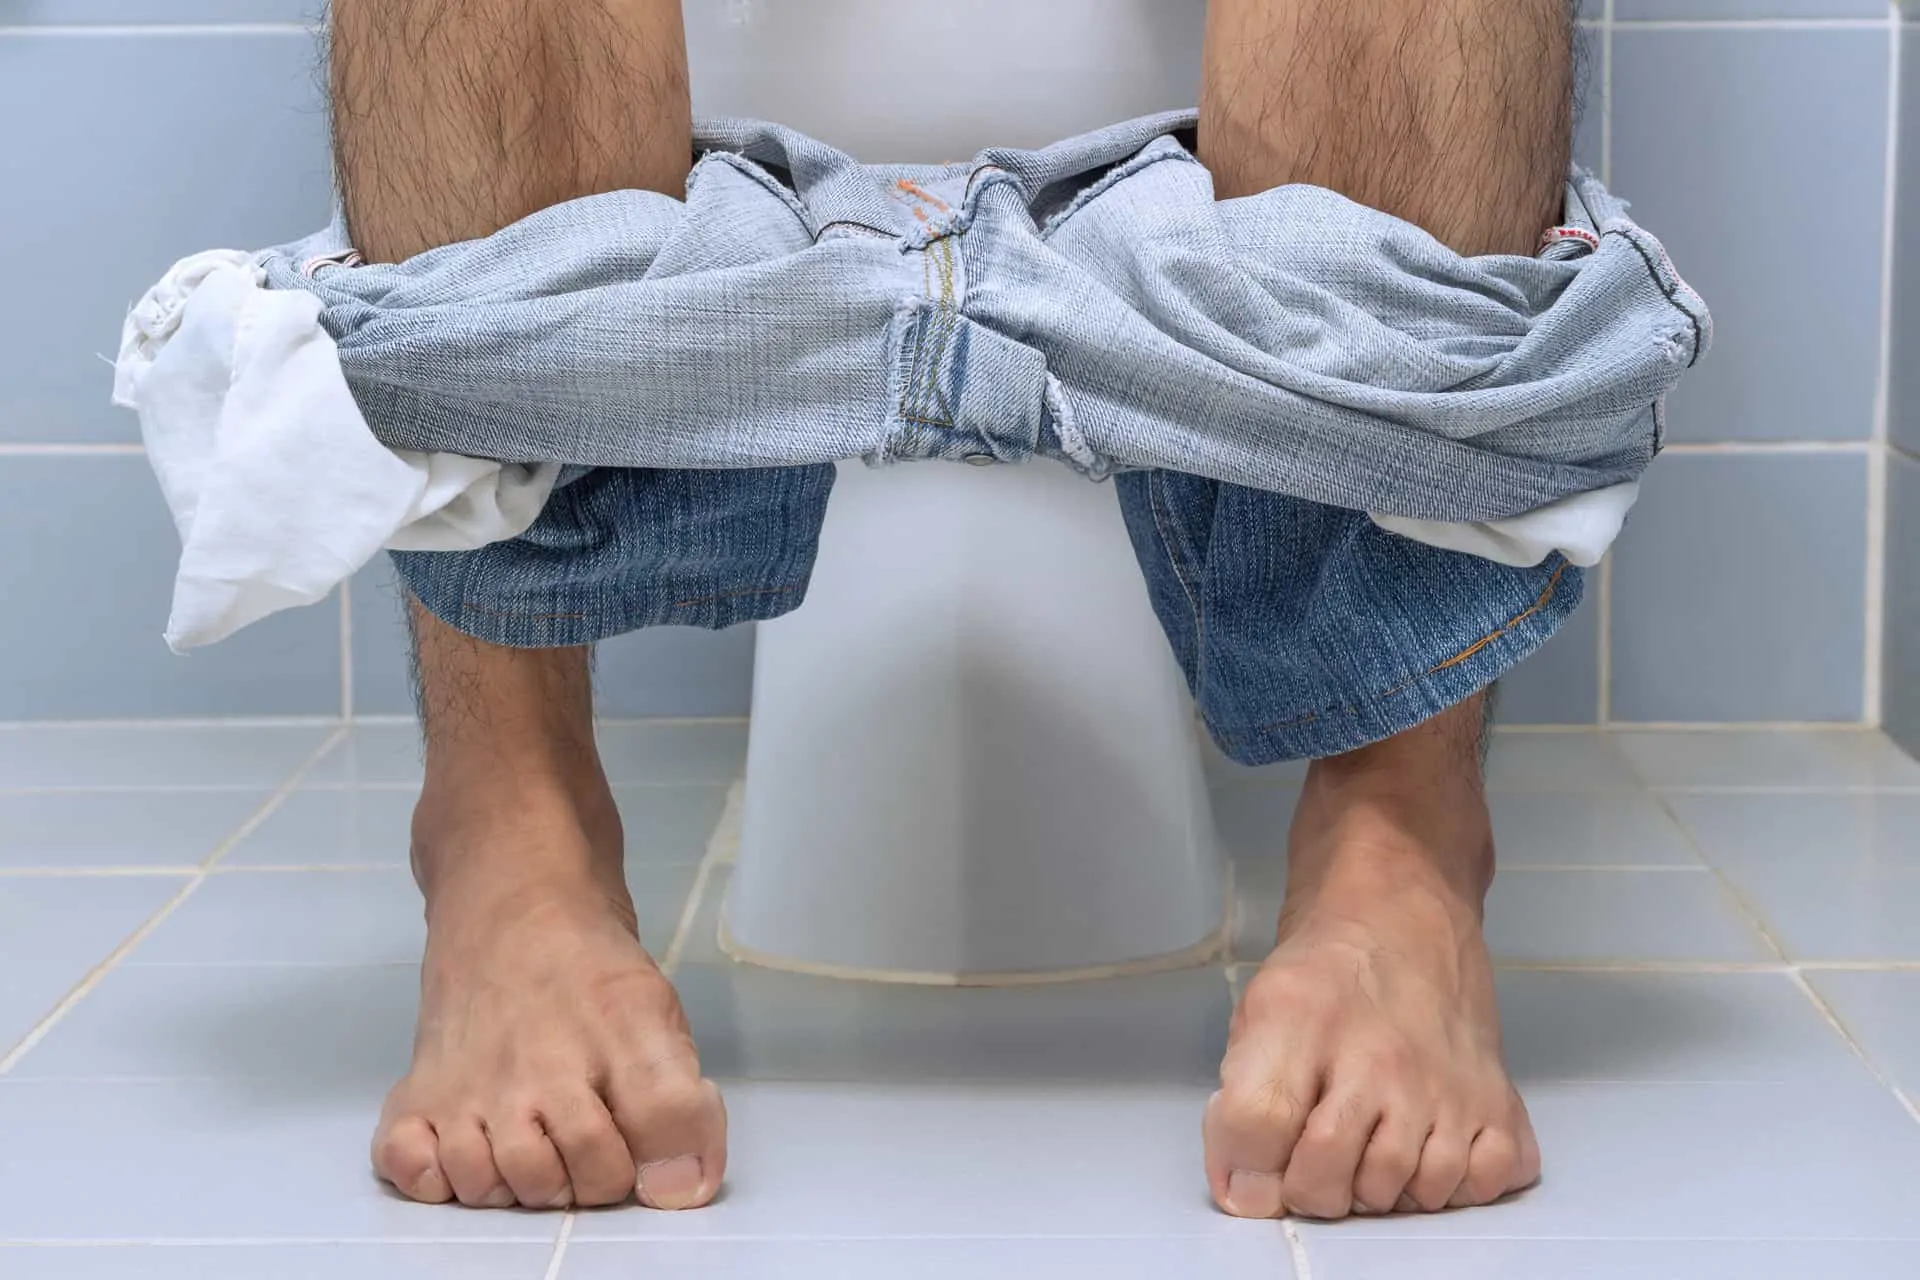 picioarele unui barbat care sta asezat pe o toaleta